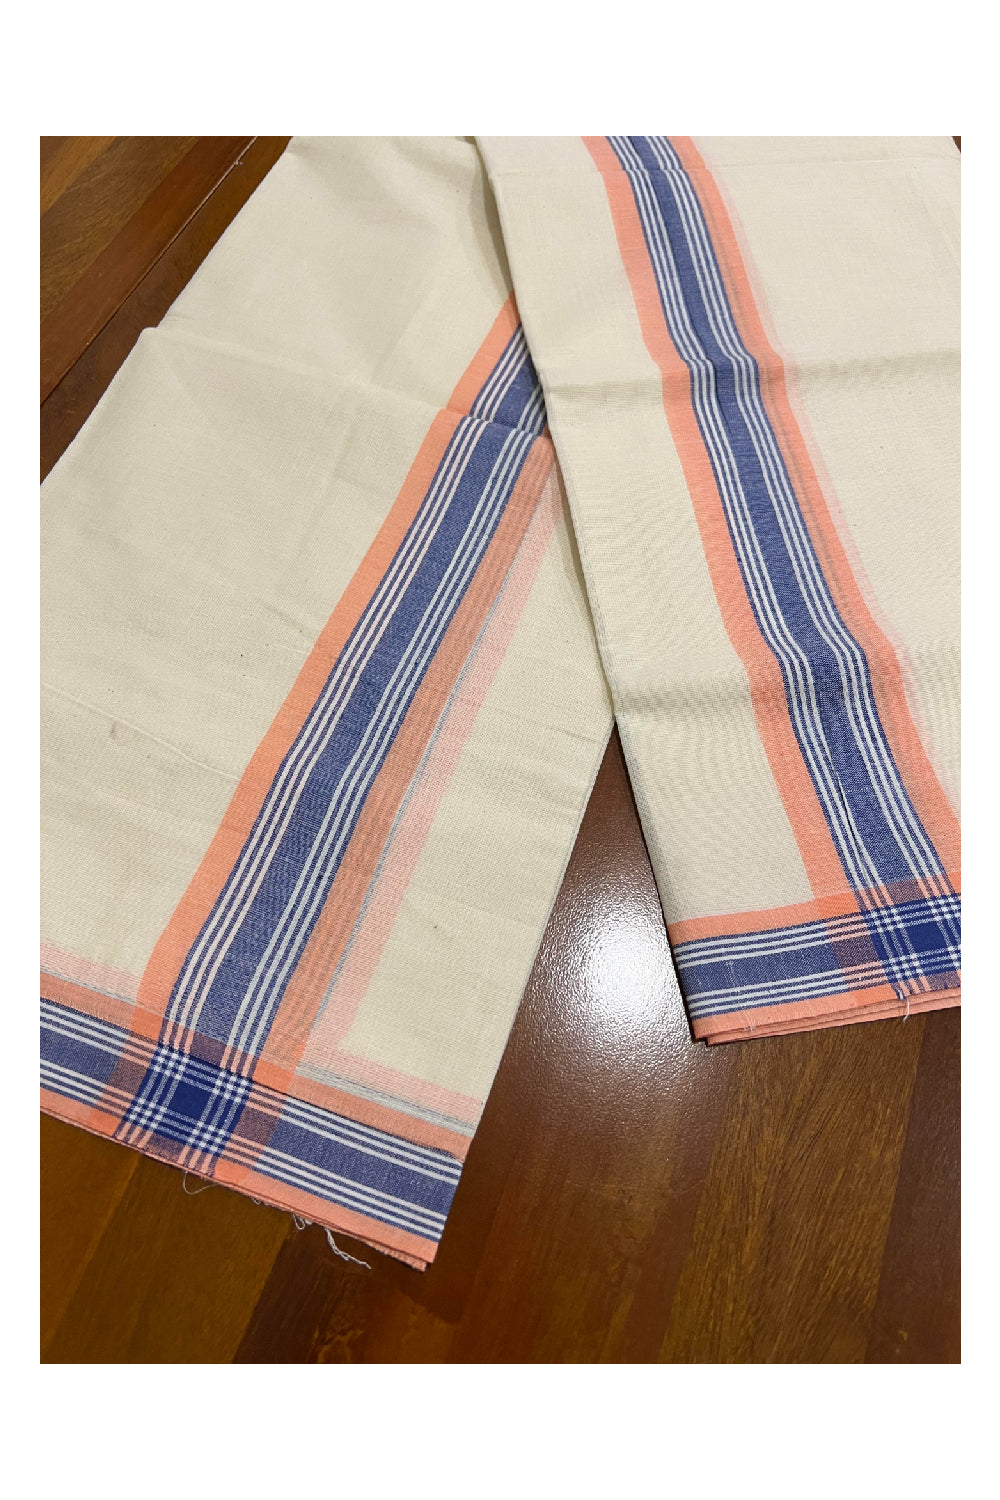 Kerala Cotton Mundum Neriyathum Single (Set Mundu) with Mulloth Design Orange and Blue Border (Extra Soft Cotton)